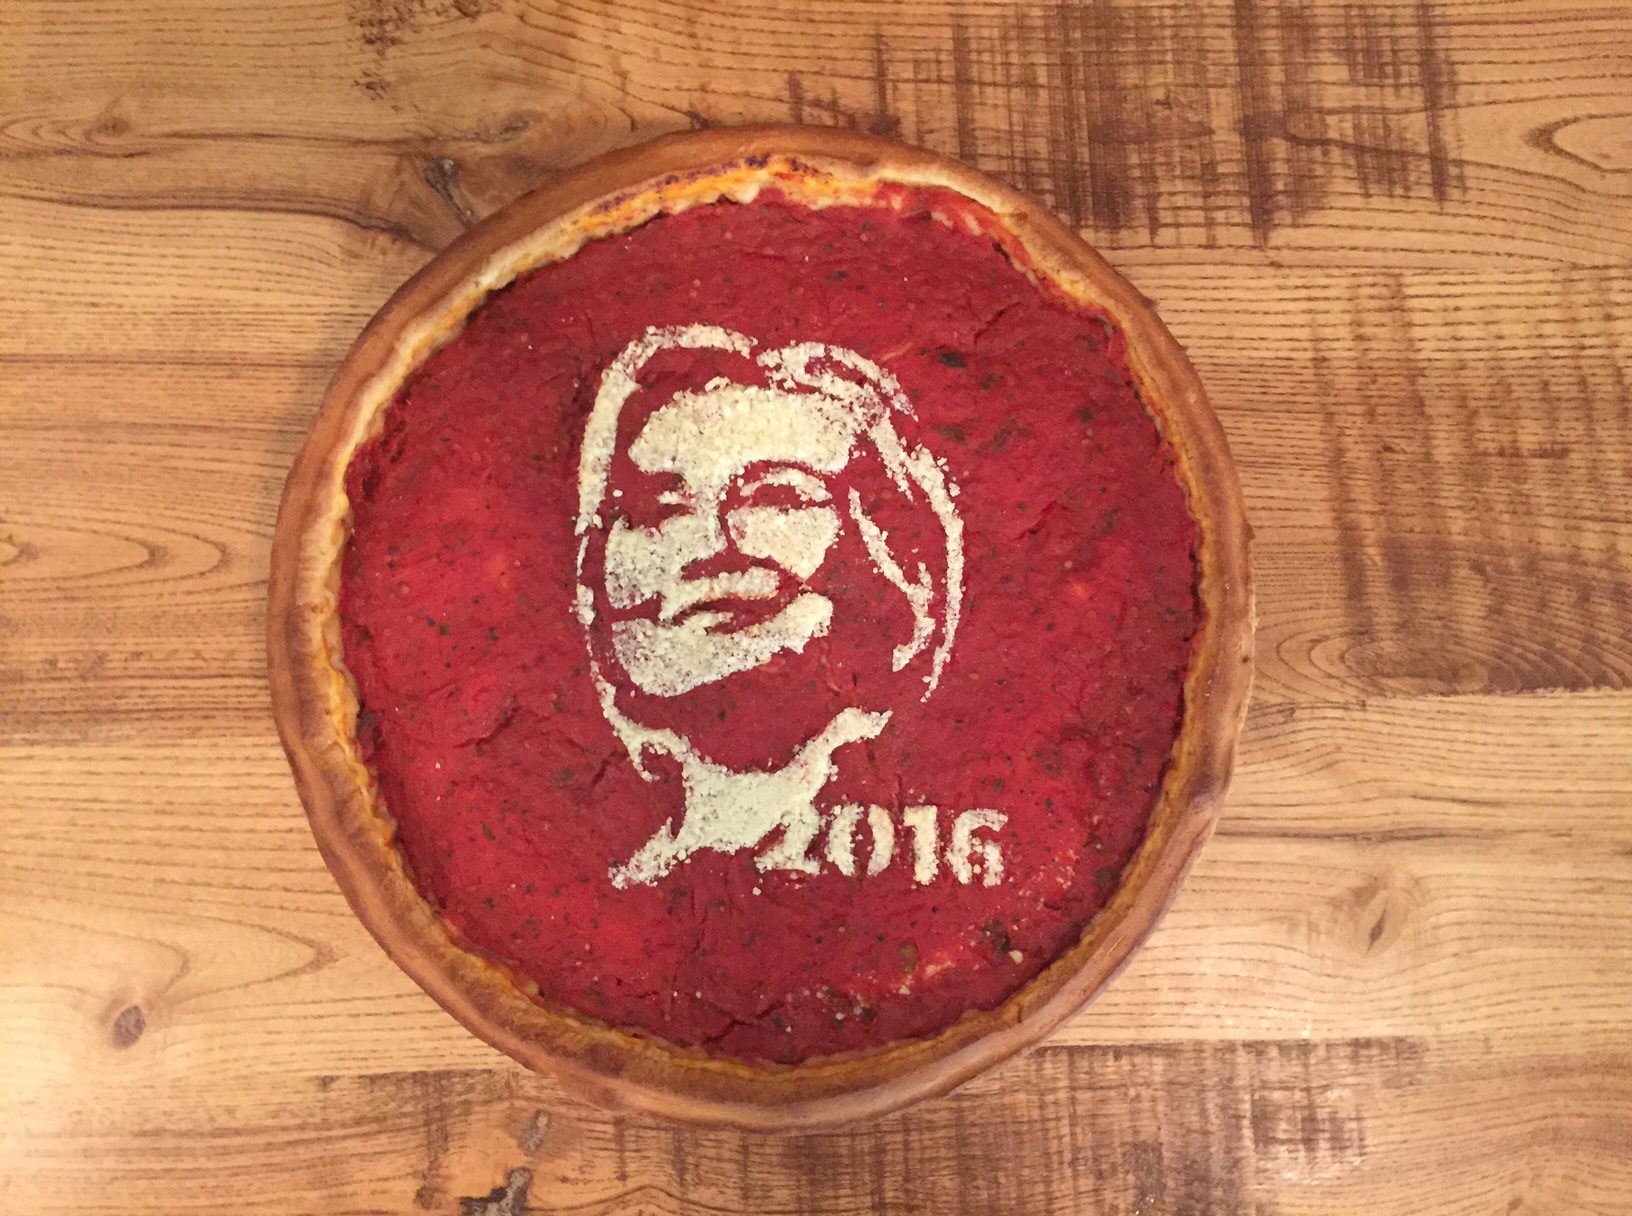 Hillary Clinton Pizza (Giordano's)